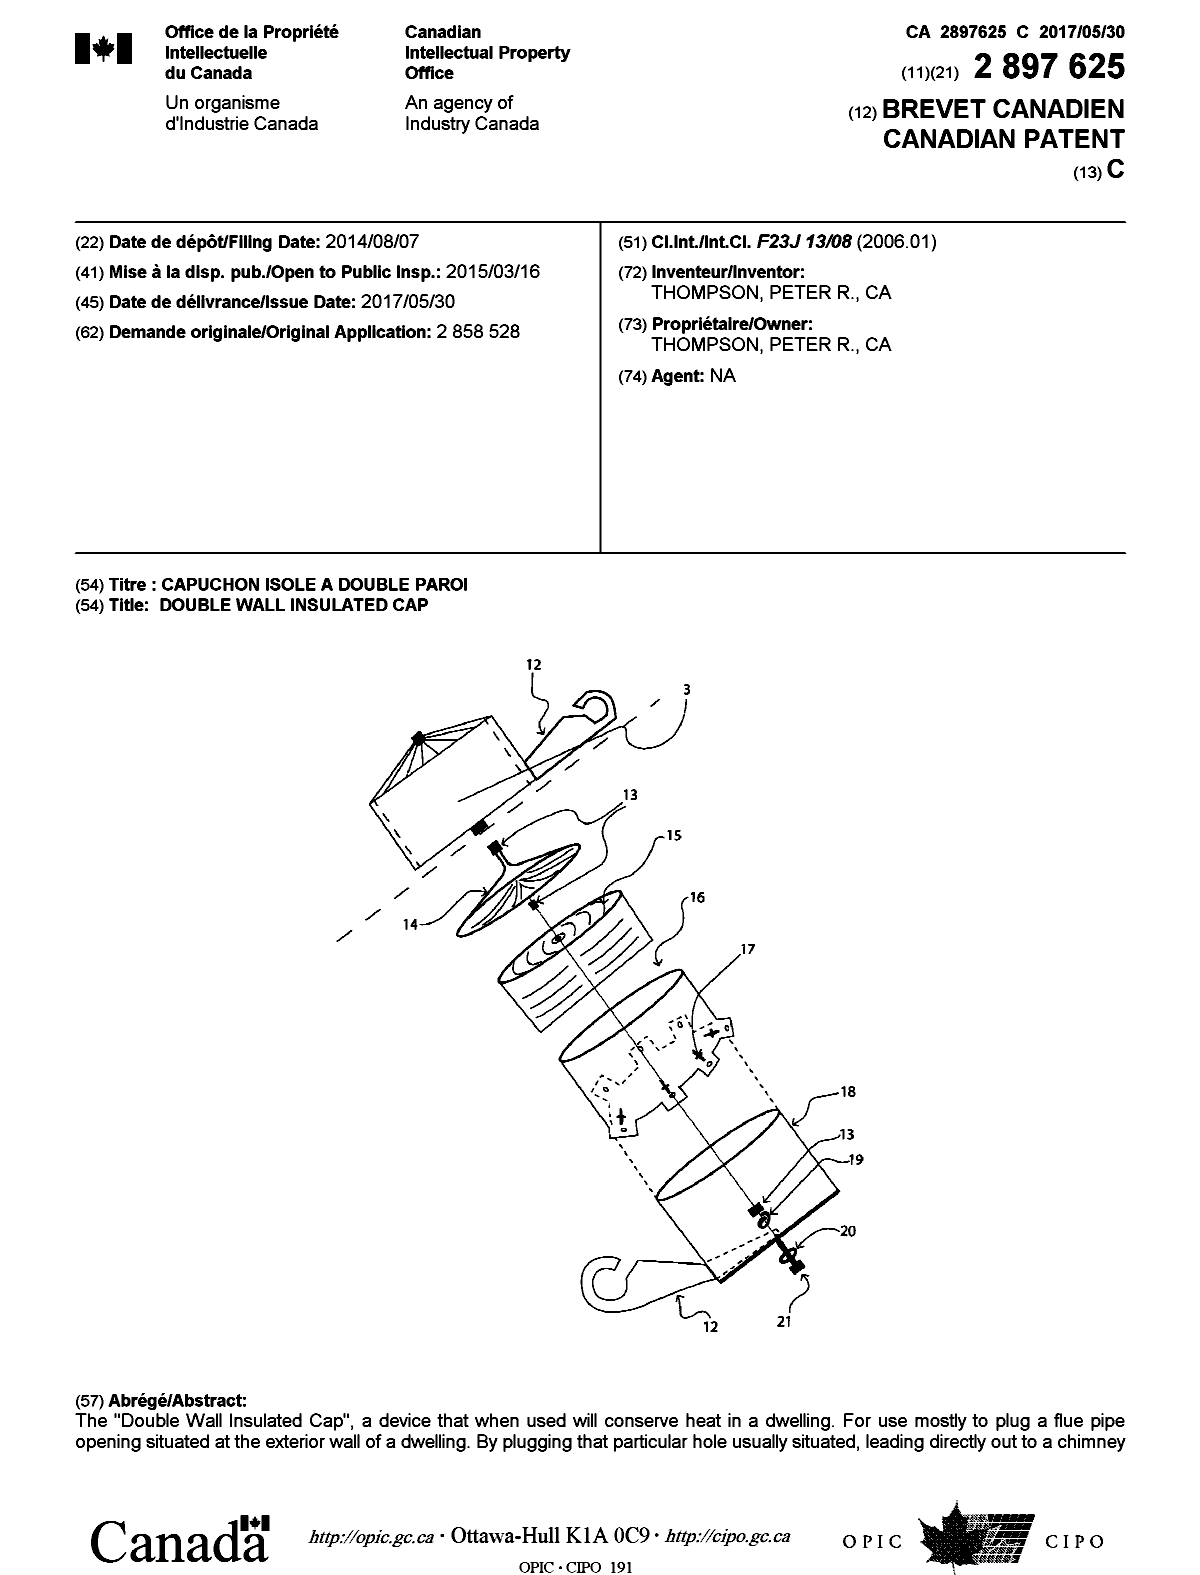 Document de brevet canadien 2897625. Page couverture 20161228. Image 1 de 2